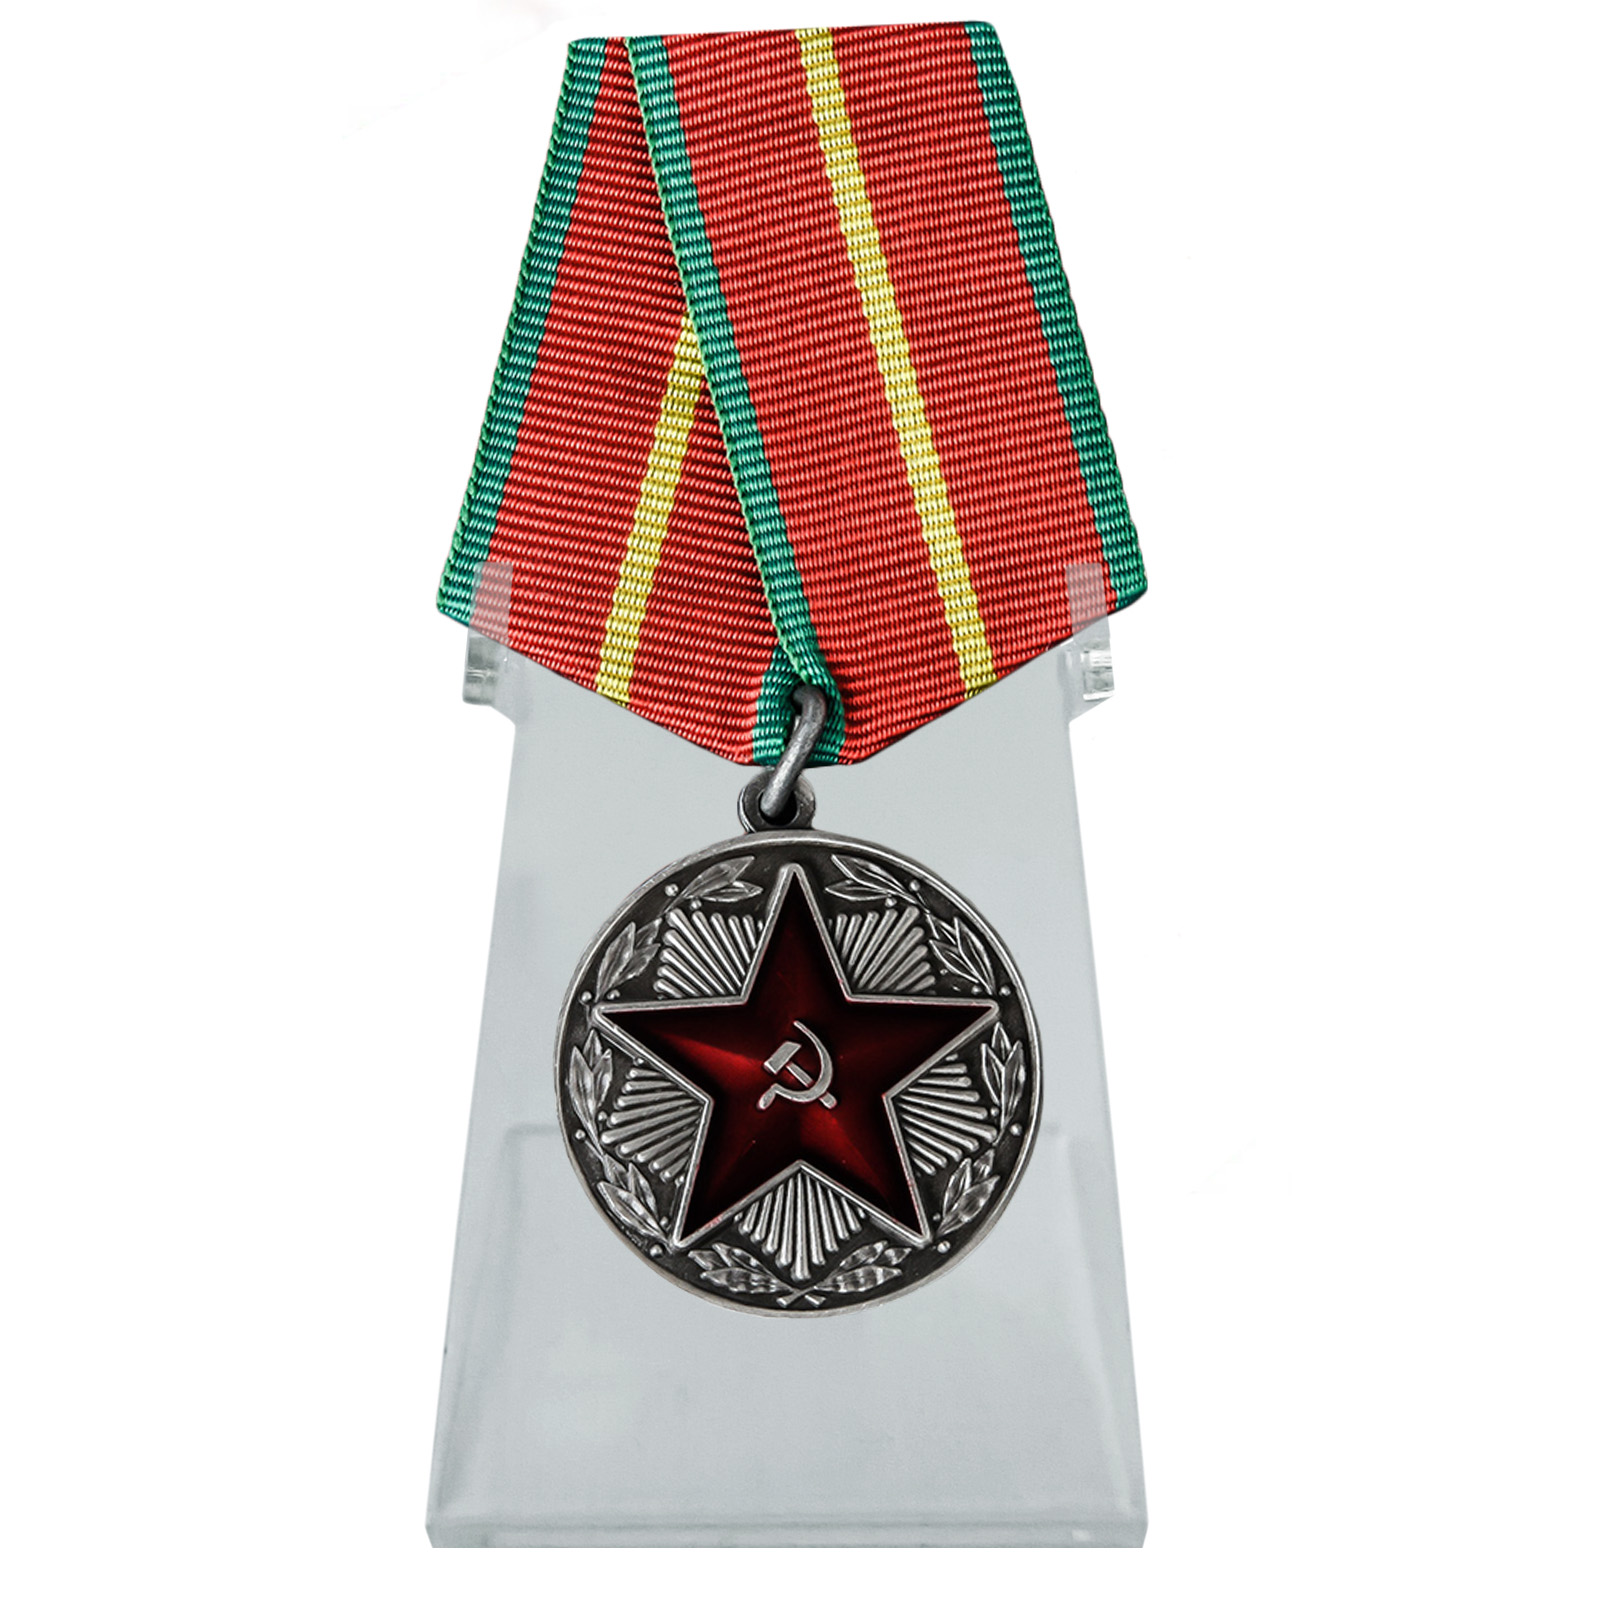 Медаль "За безупречную службу" МВД на подставке